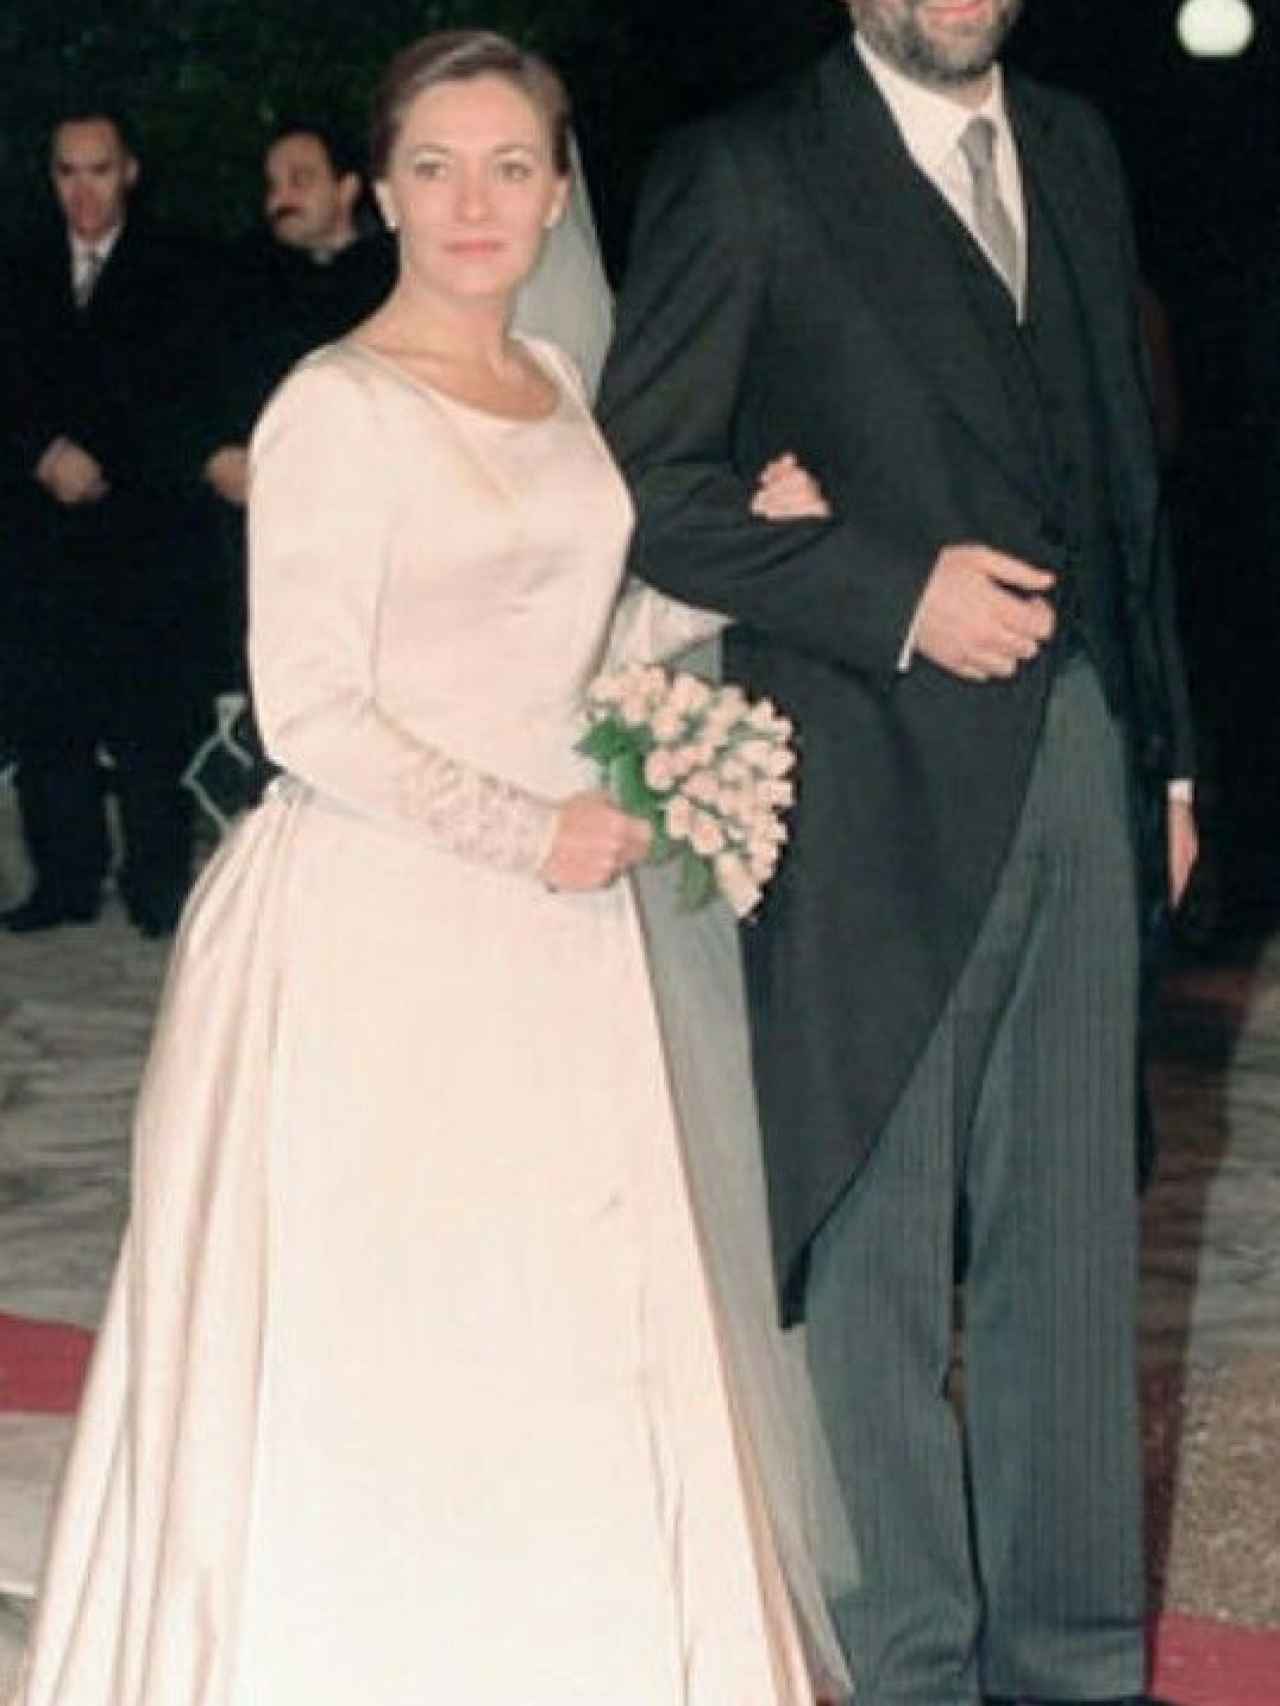 Imagen de la boda de Mariano Rajoy y Elvira Fernández